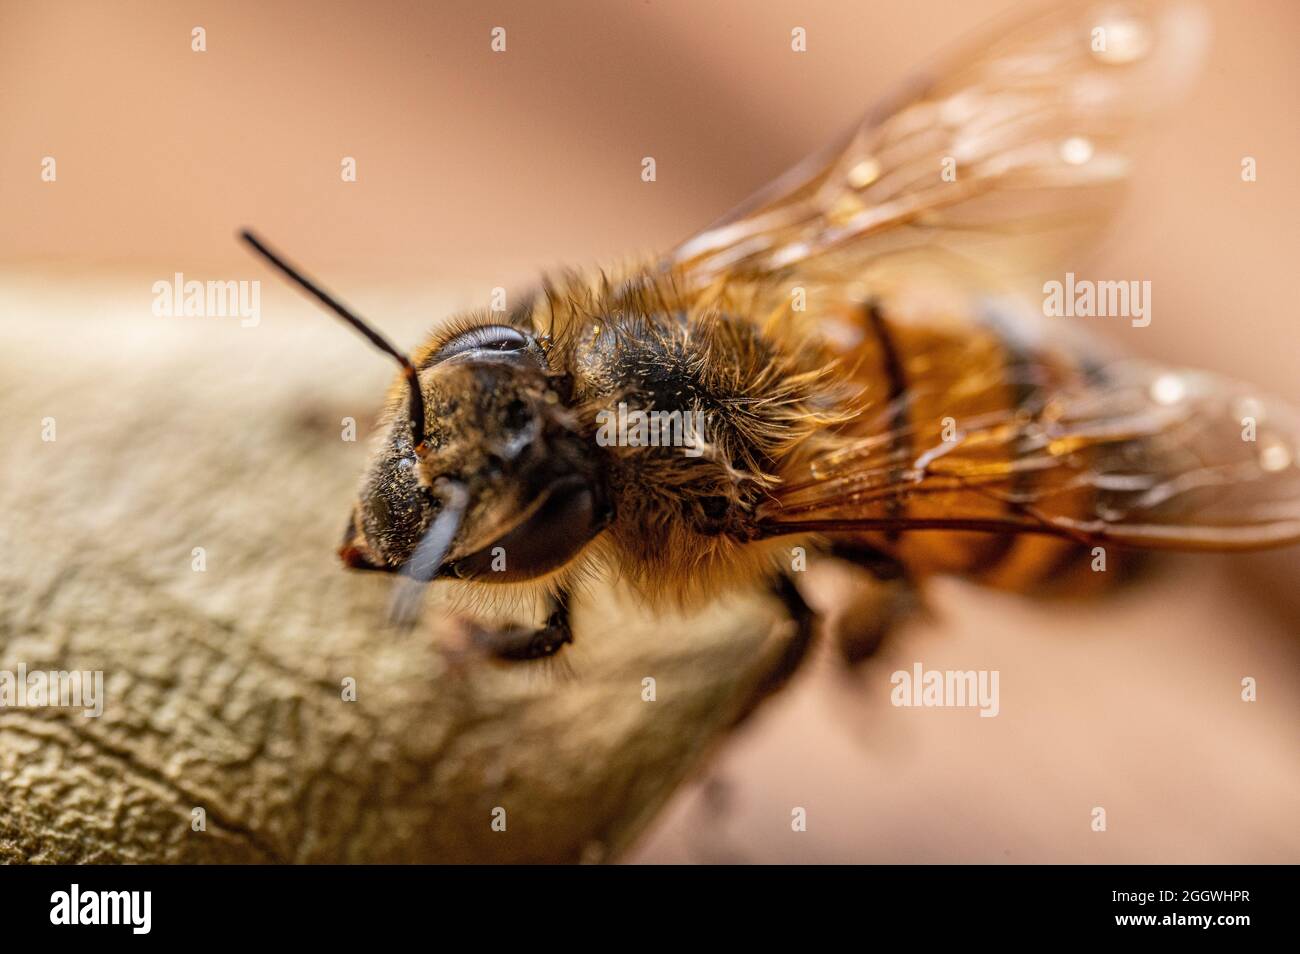 Biene Großaufnahme Macro Stock Photo